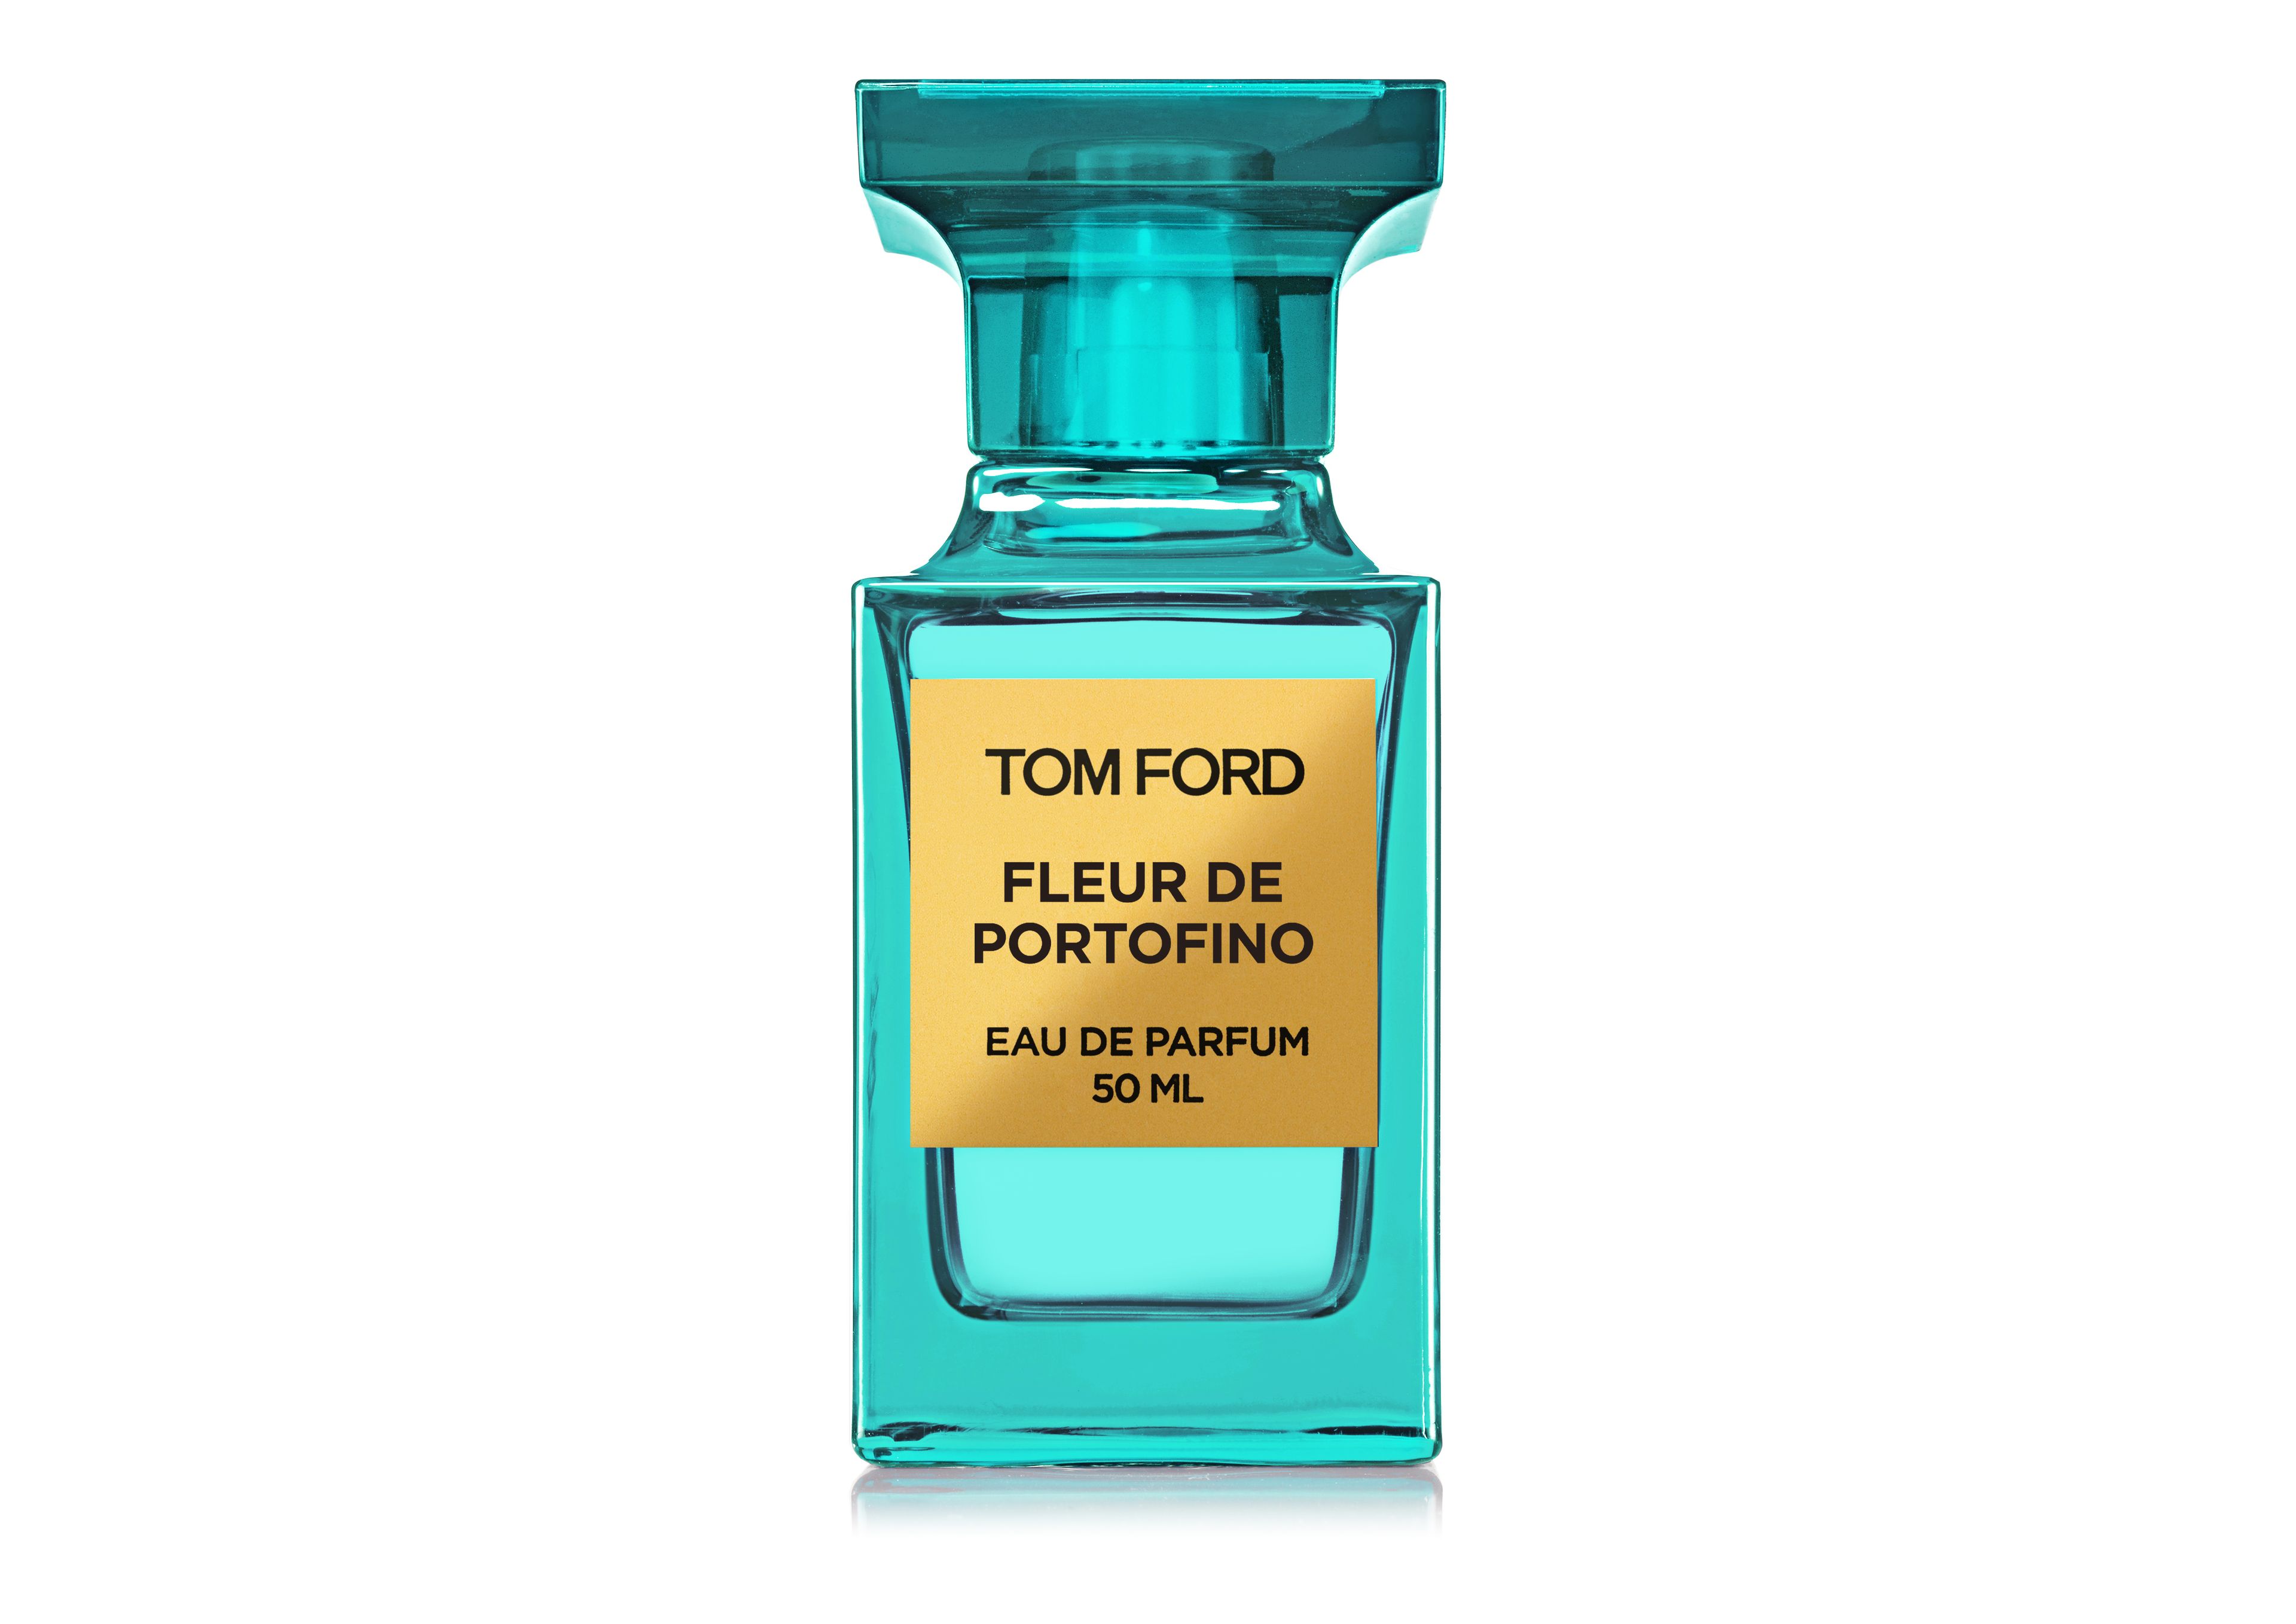 Tom Ford Fleur De Portofino 1